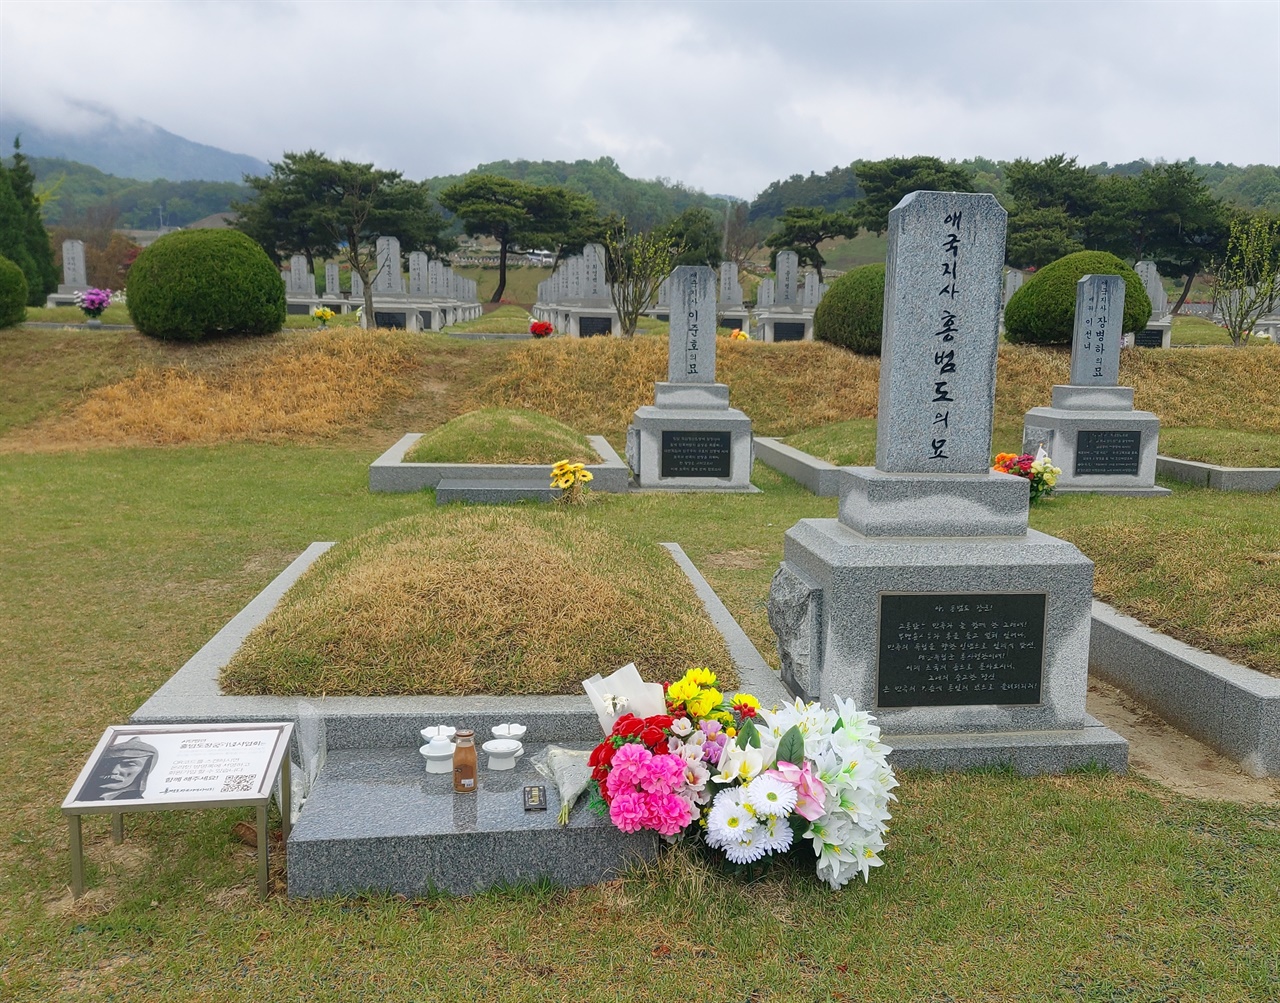  애국지사 홍범도의 묘. 대전현충원 독립유공자 제 3 묘역에 자리하고 있다. 누군가가 커피와 꽃을 갖다놨다.